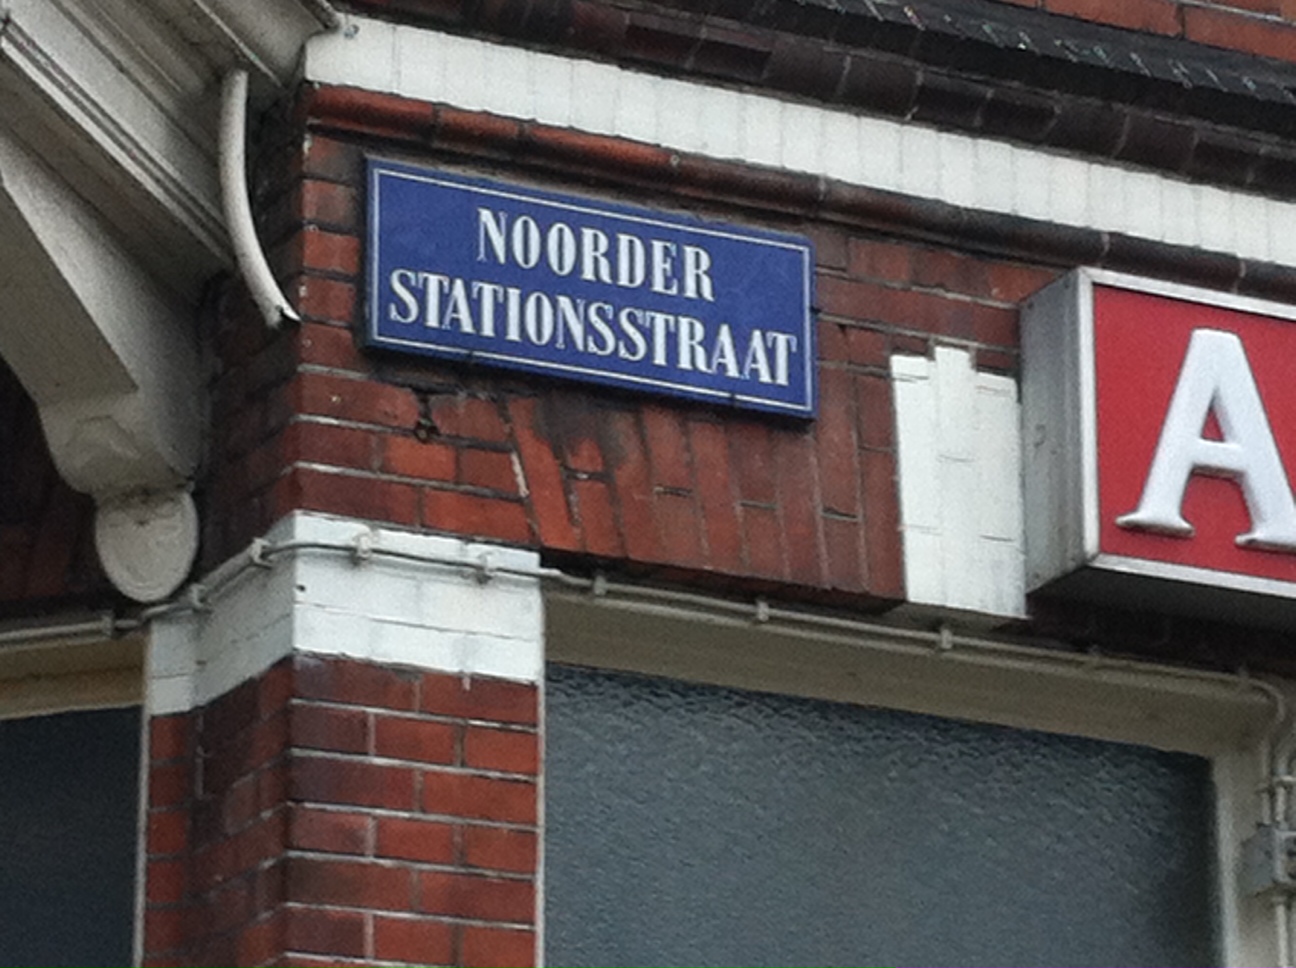 En dit is de straat. De Noordersstationsstraat.